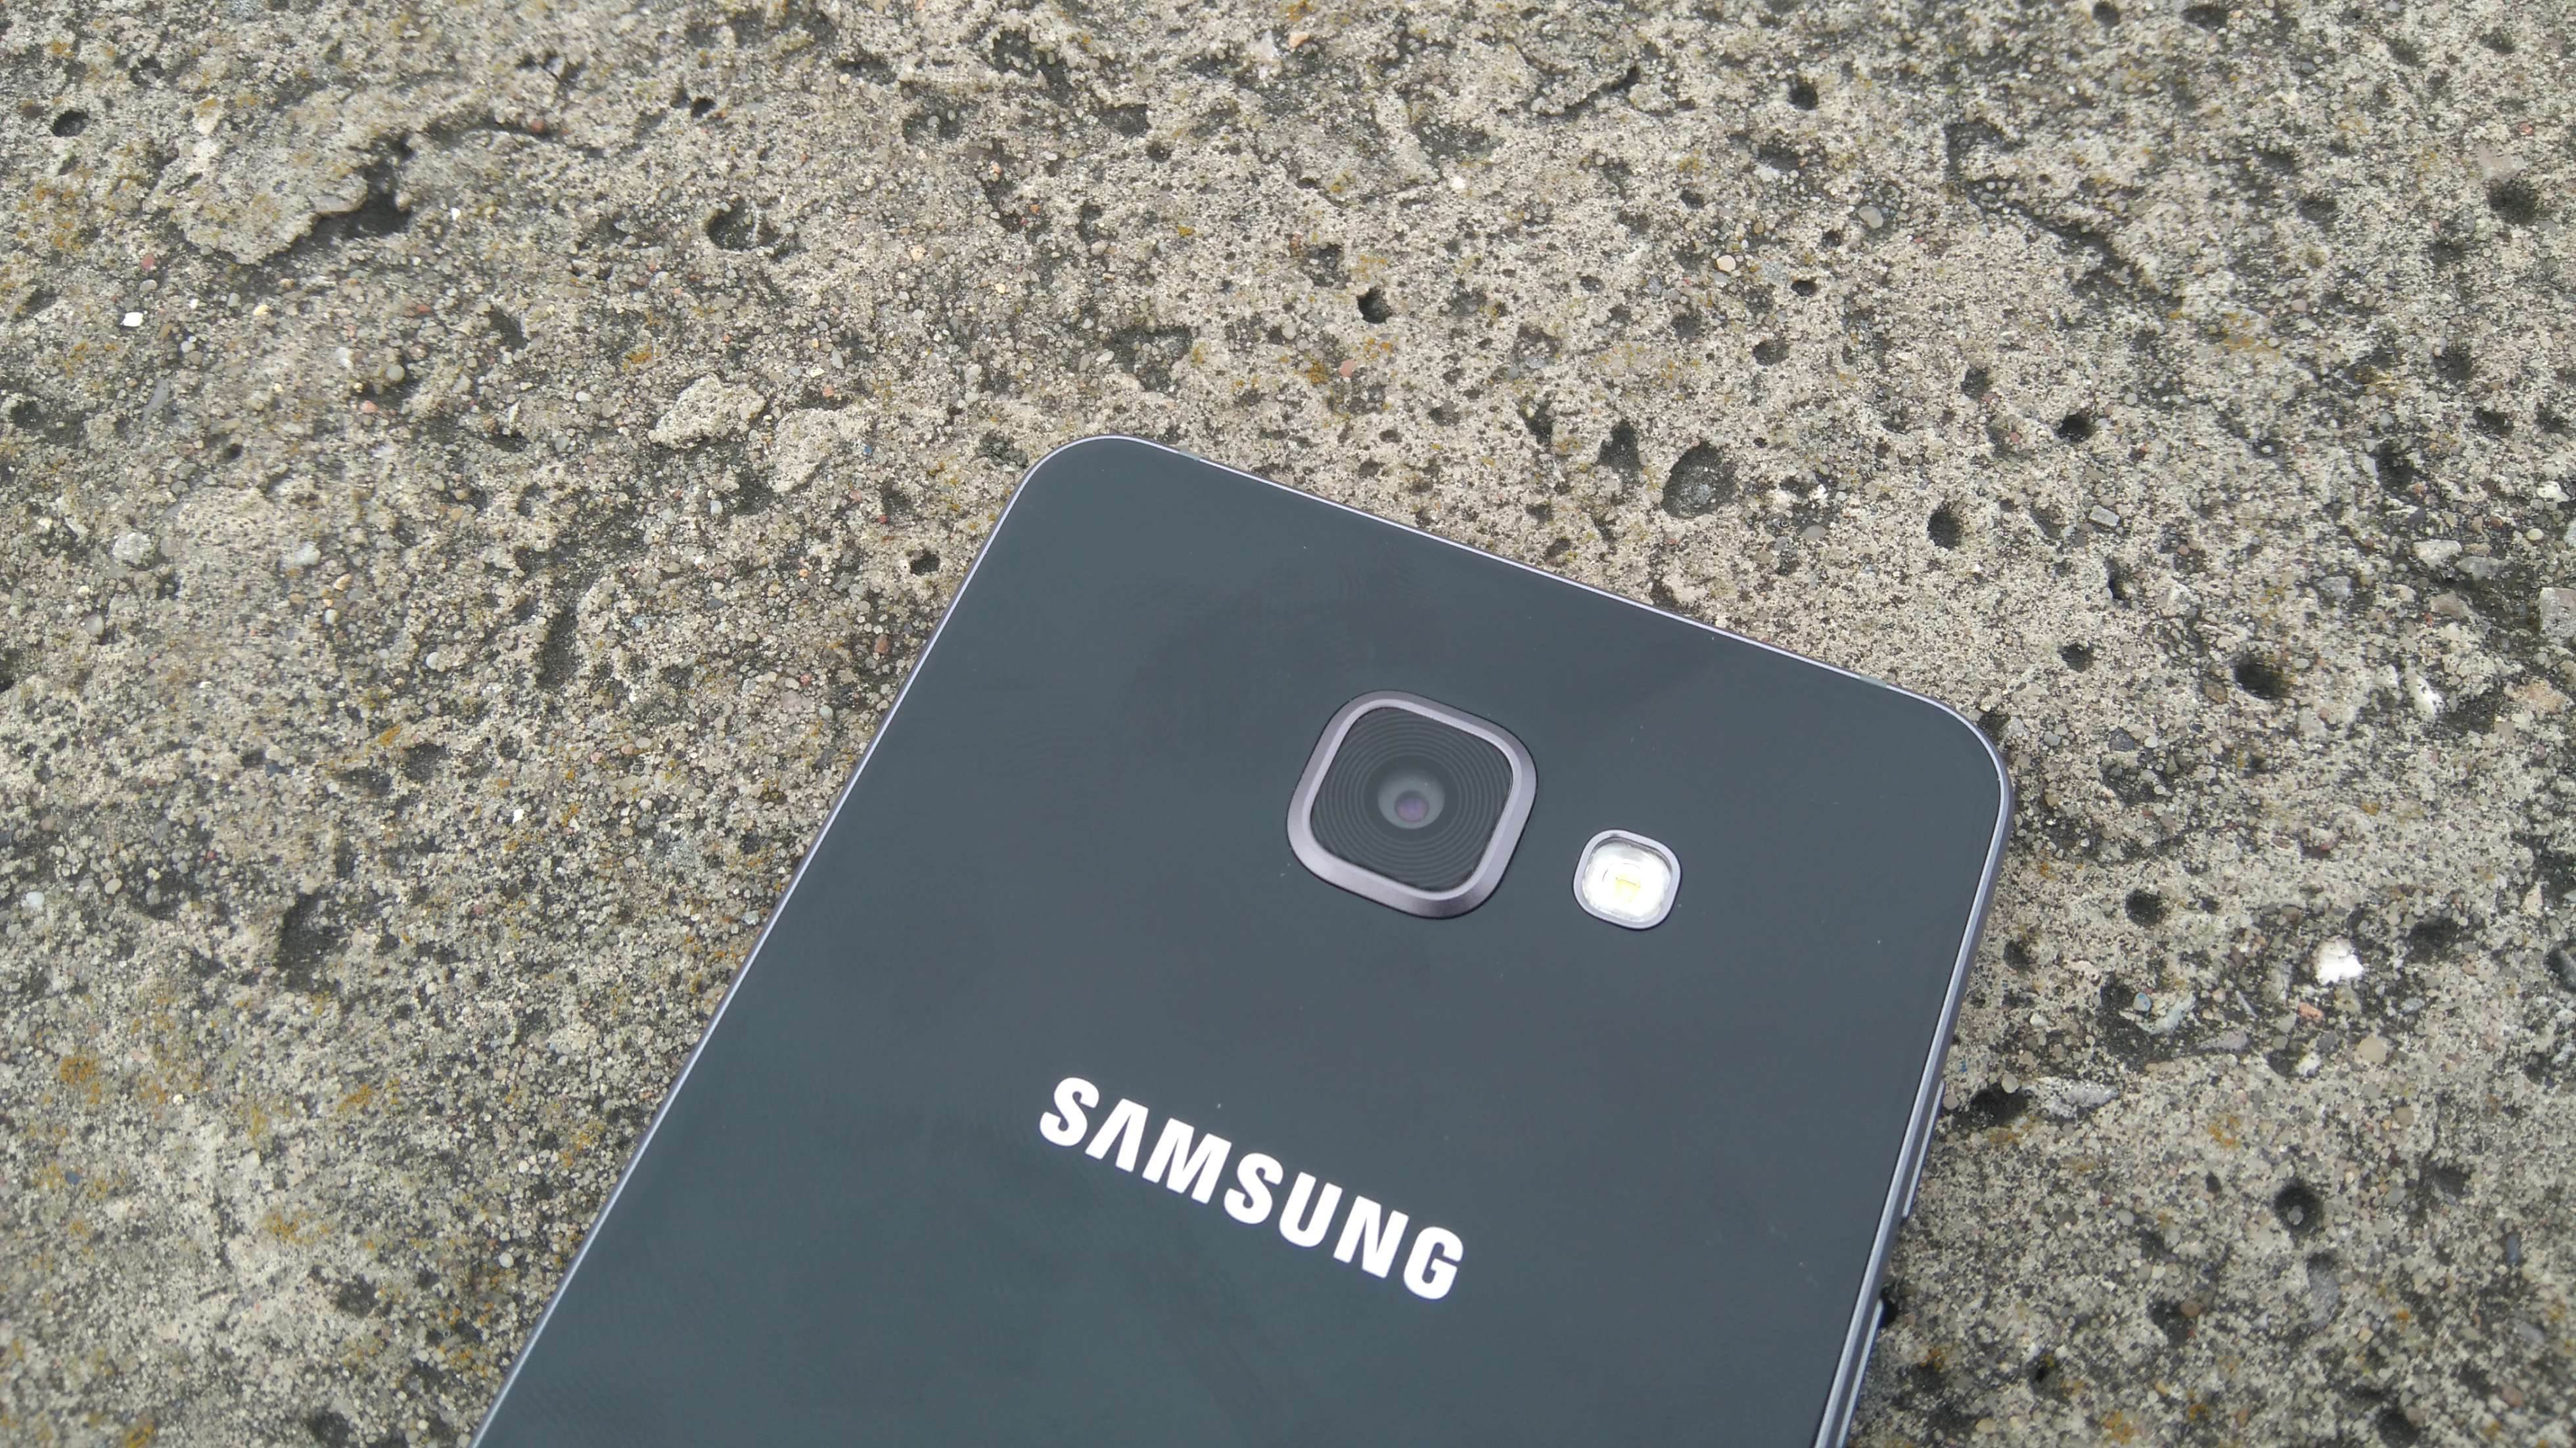 Samsung Galaxy A5 (2016) - recenzja urządzenia recenzje, polecane zalety, wady, Specyfikacja, Samsung Galaxy A5 2016, Samsung, recenzja Samsung Galaxy A5 (2016), Recenzja, polska recenzja, Opis, czy warto kupić Samsung Galaxy A5 (2016), cena, a5 z 2016, 2016  Samsung na nowo zapałał miłością do wysokiej jakości wykonania swoich mobilnych produktów, czego dowodem jest tegoroczna seria A. DSC 0016 1